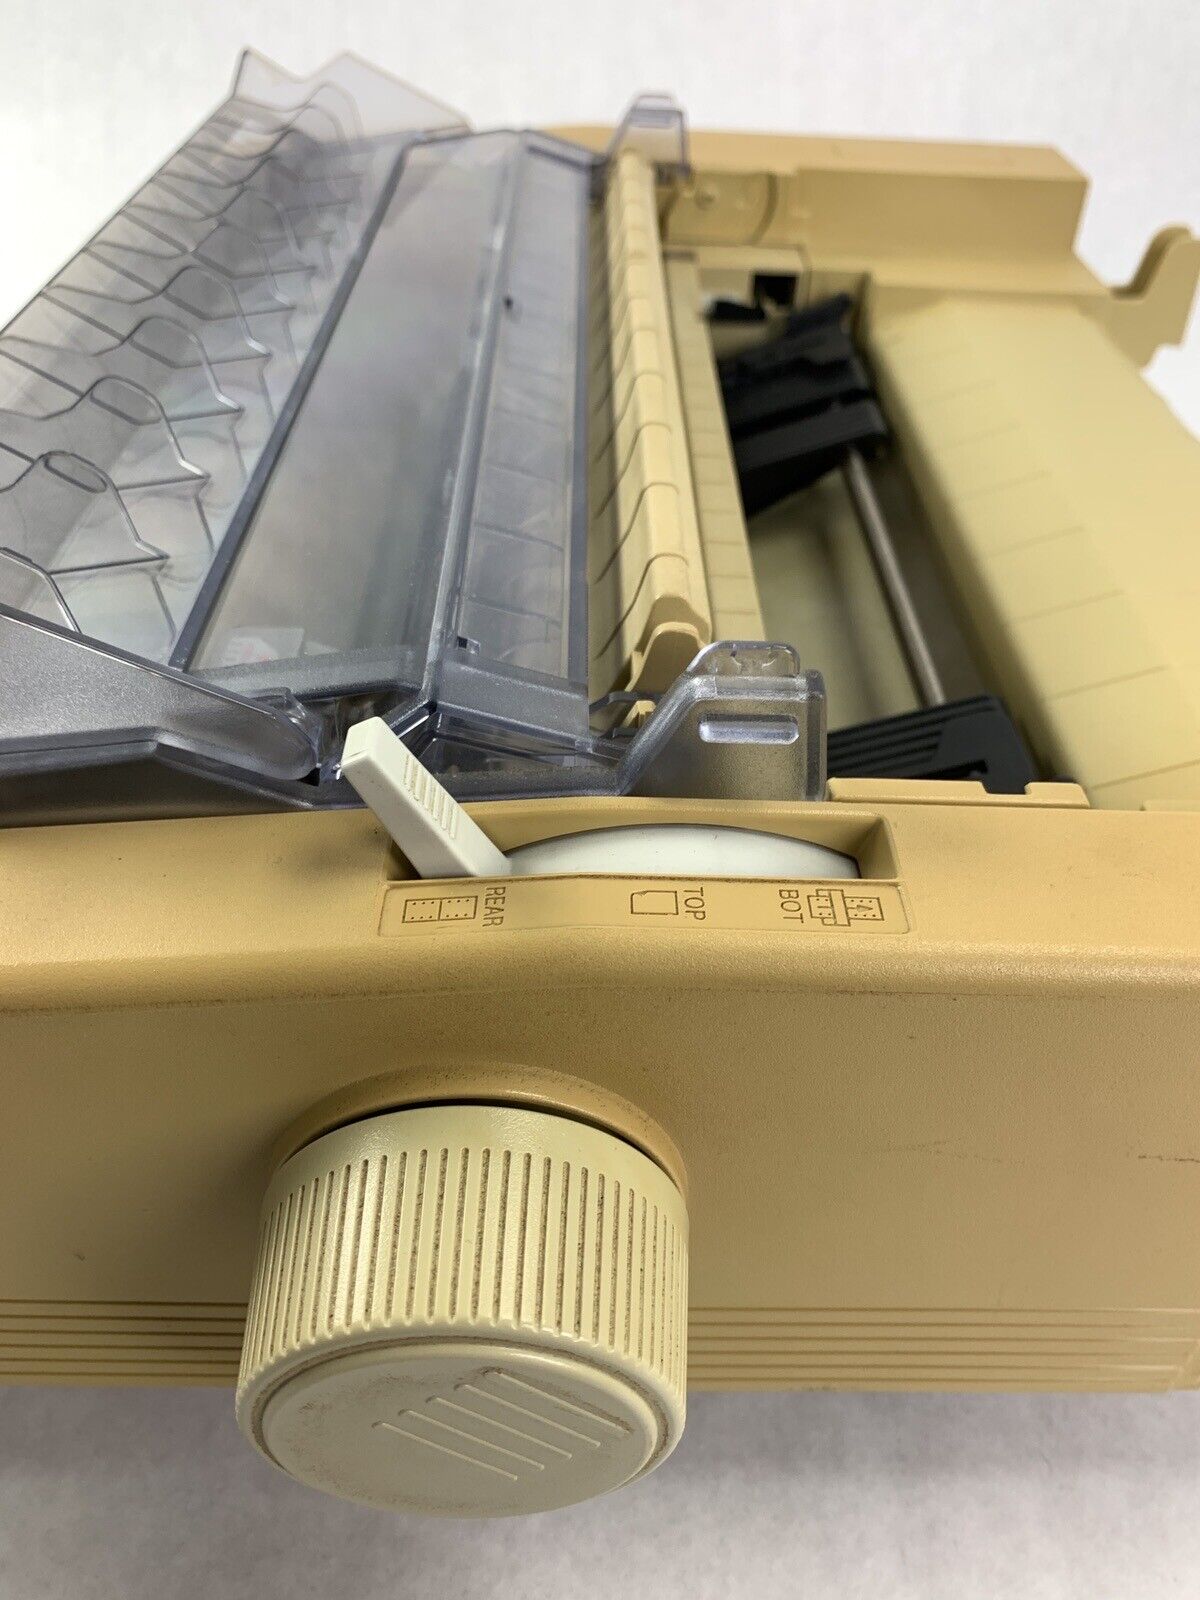 Oki GE 5258A Microline 520 Printer for Parts and Repair